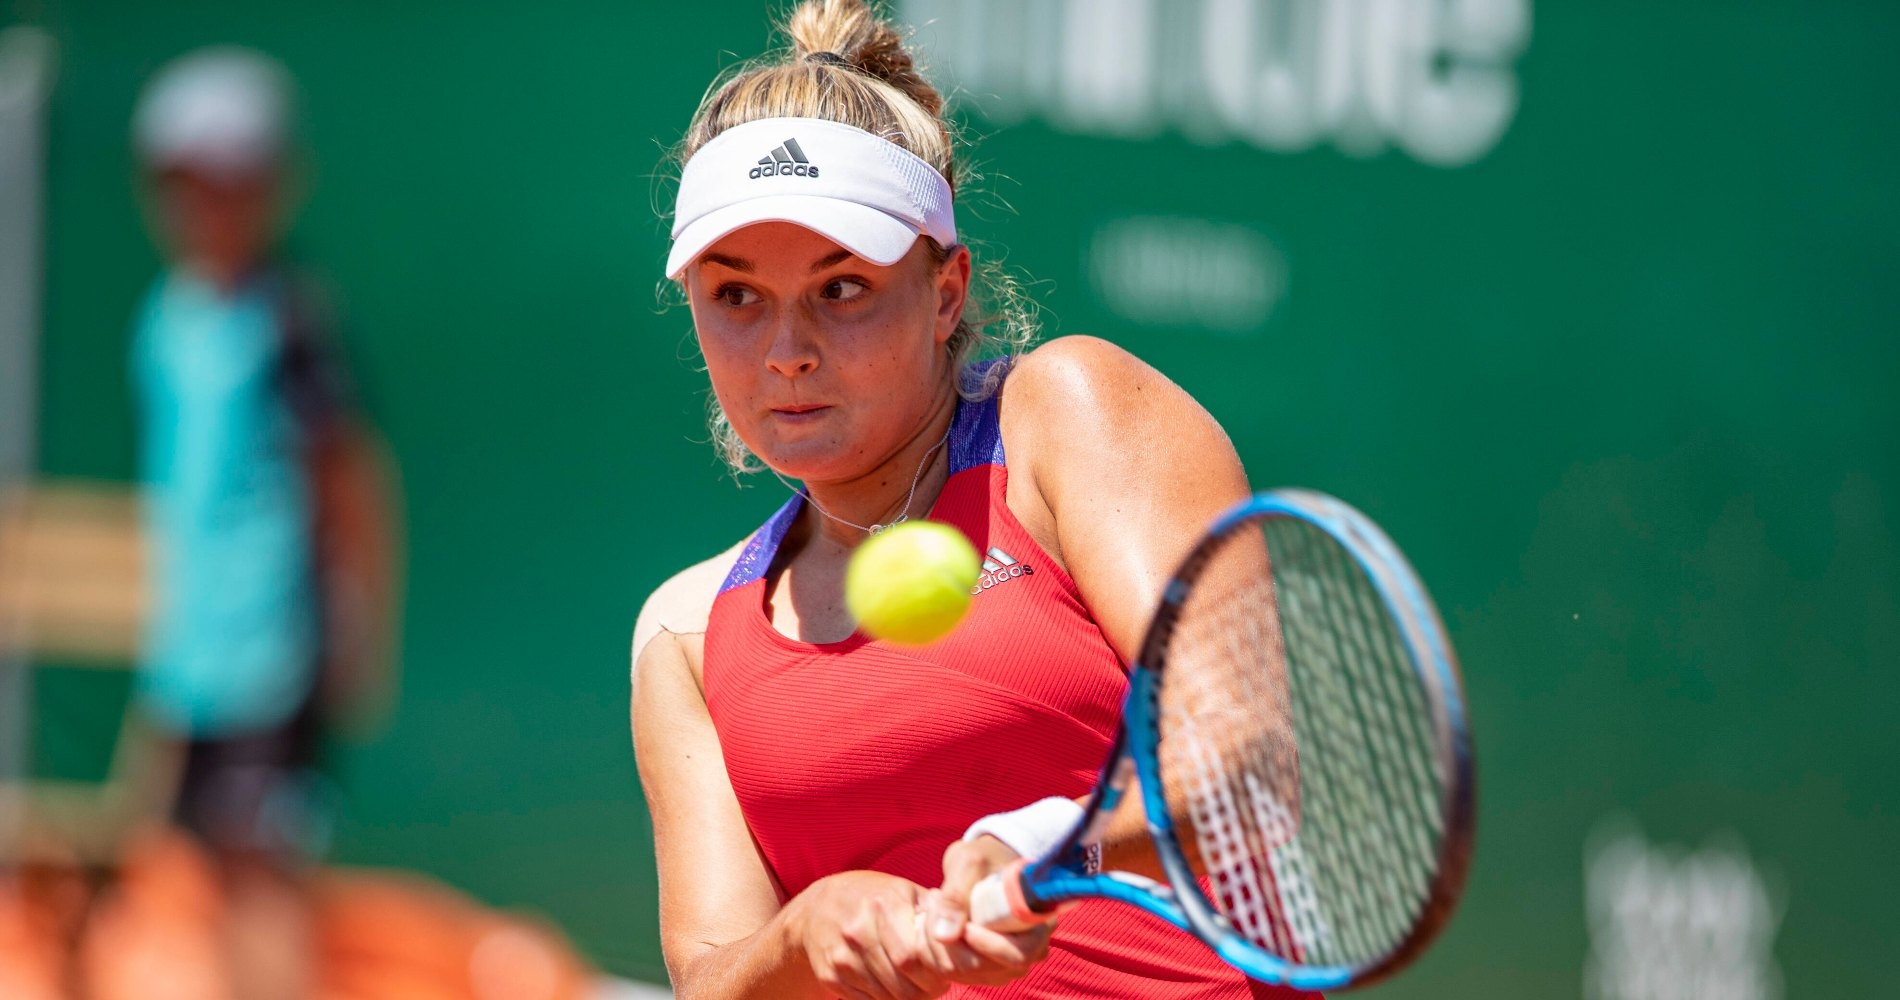 Tennis, WTA – Open de Limoges 2022: Burel beats Andreeva